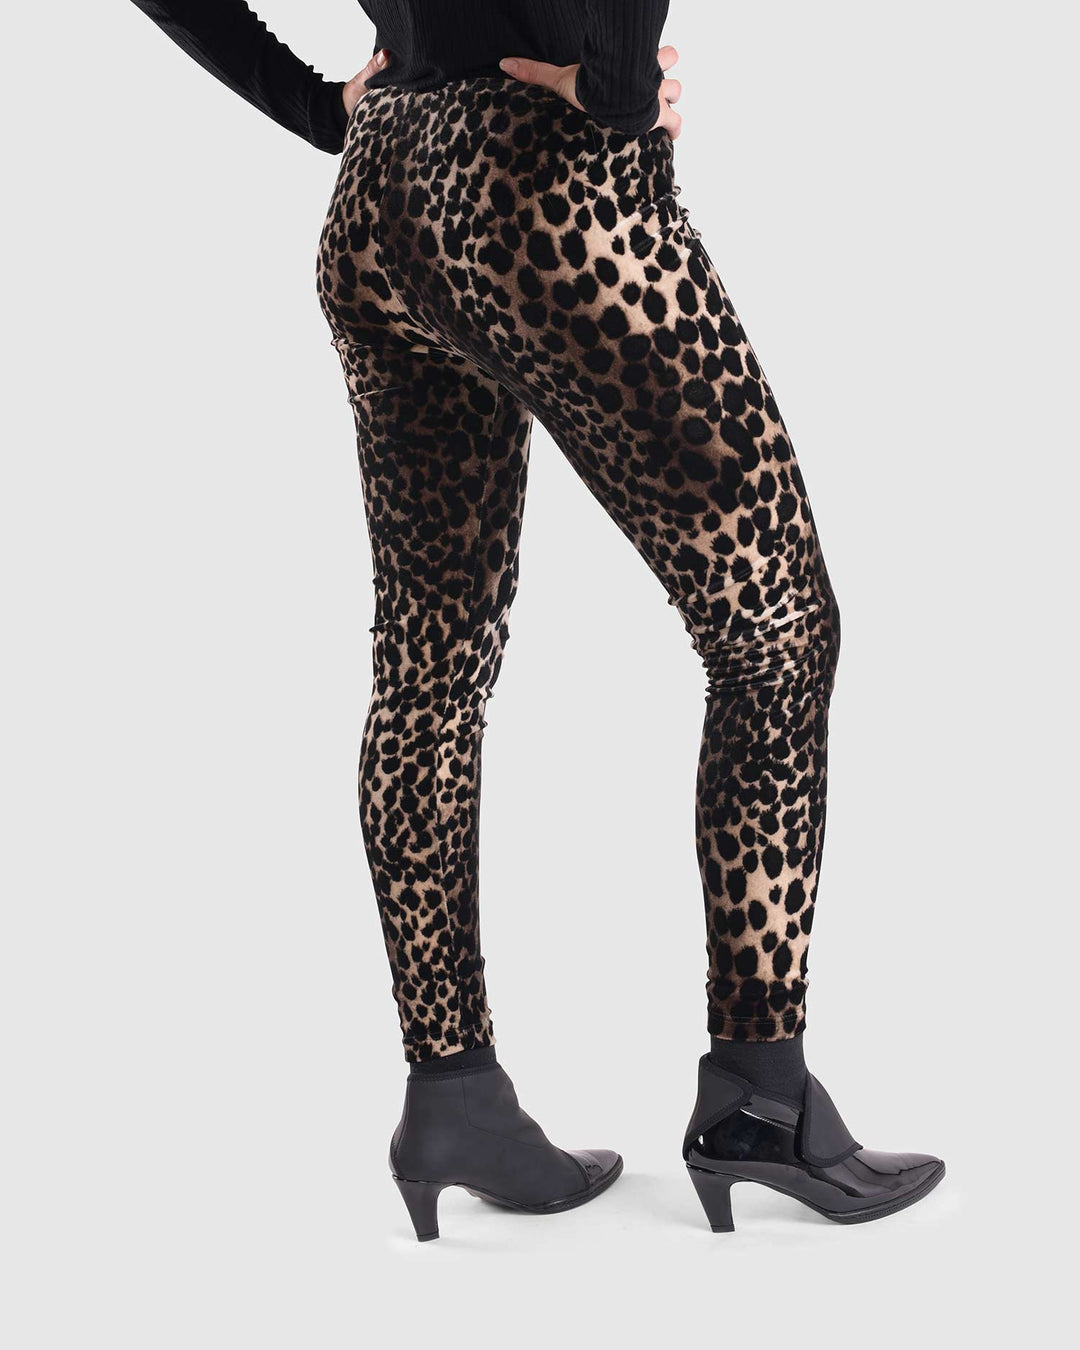 Nala Velvet Leggings, Leopard